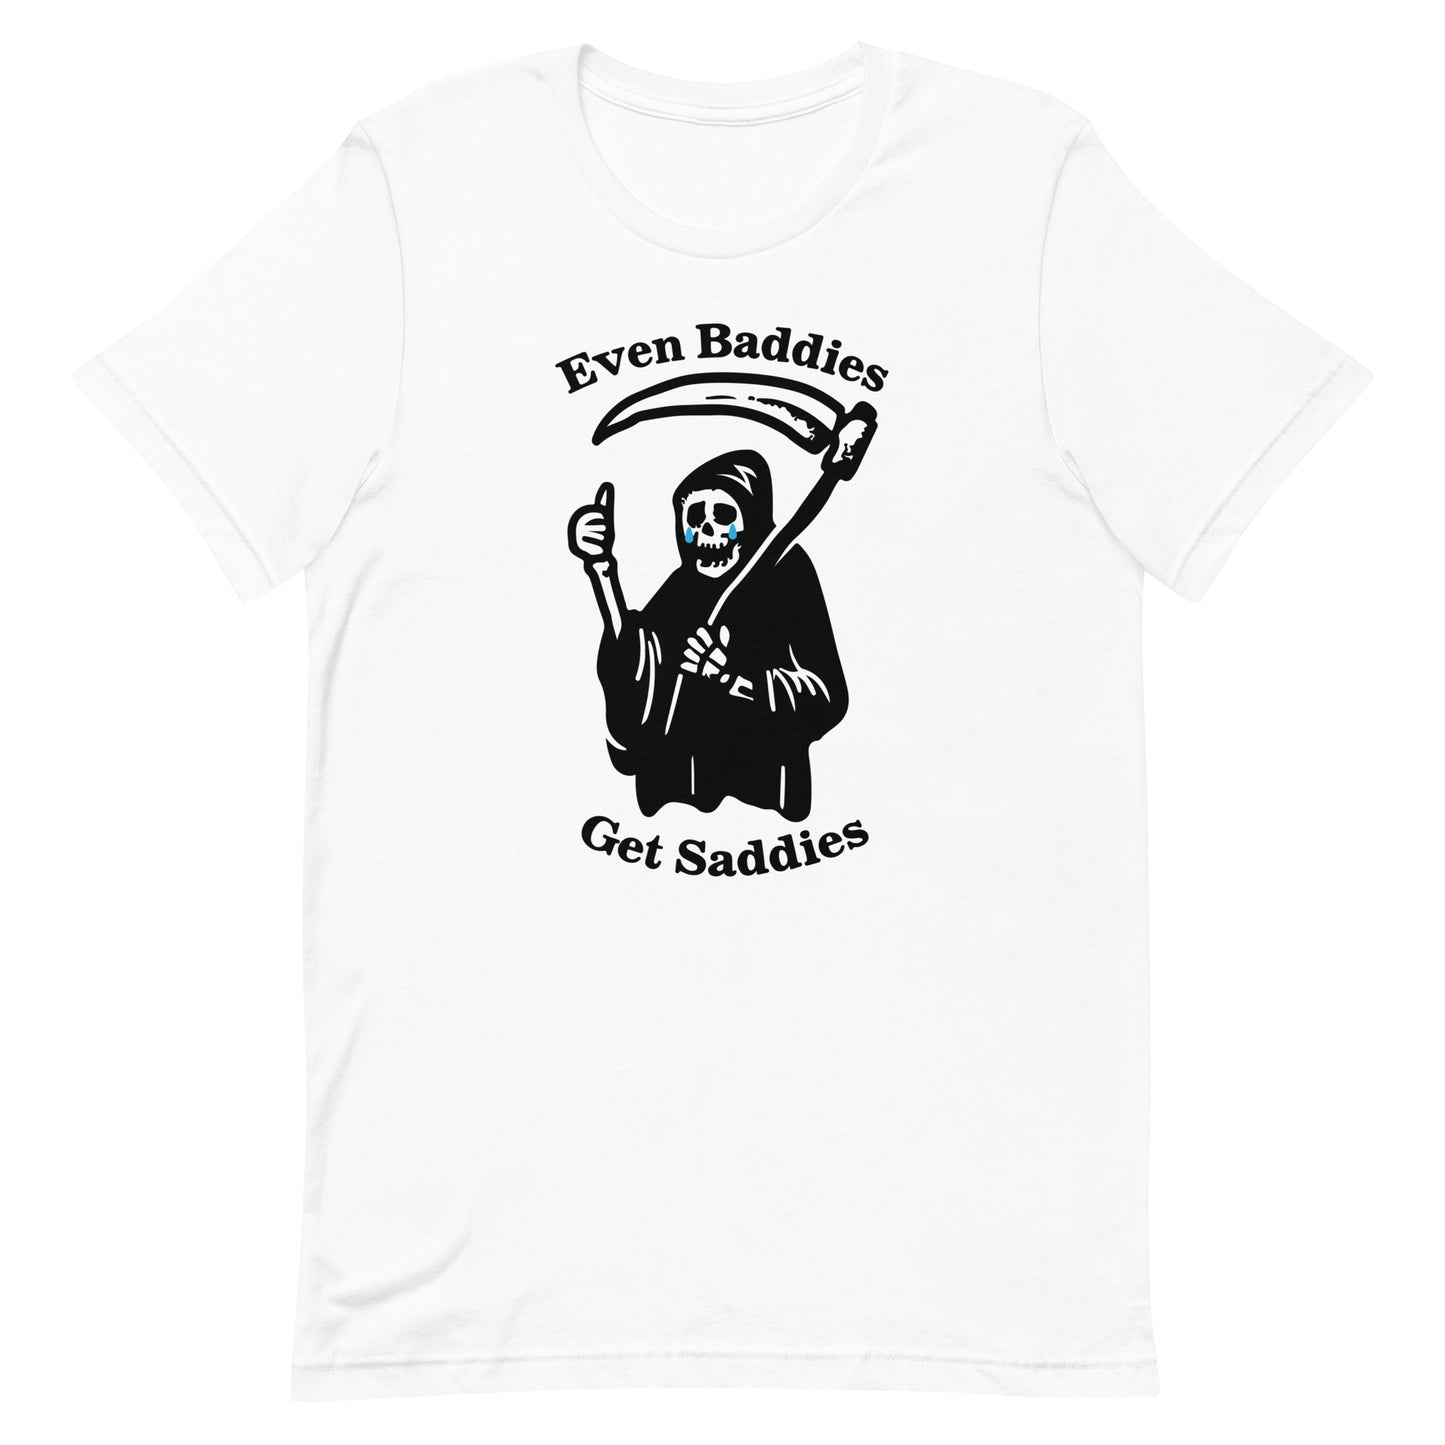 Even Baddies Get Saddies Unisex t-shirt